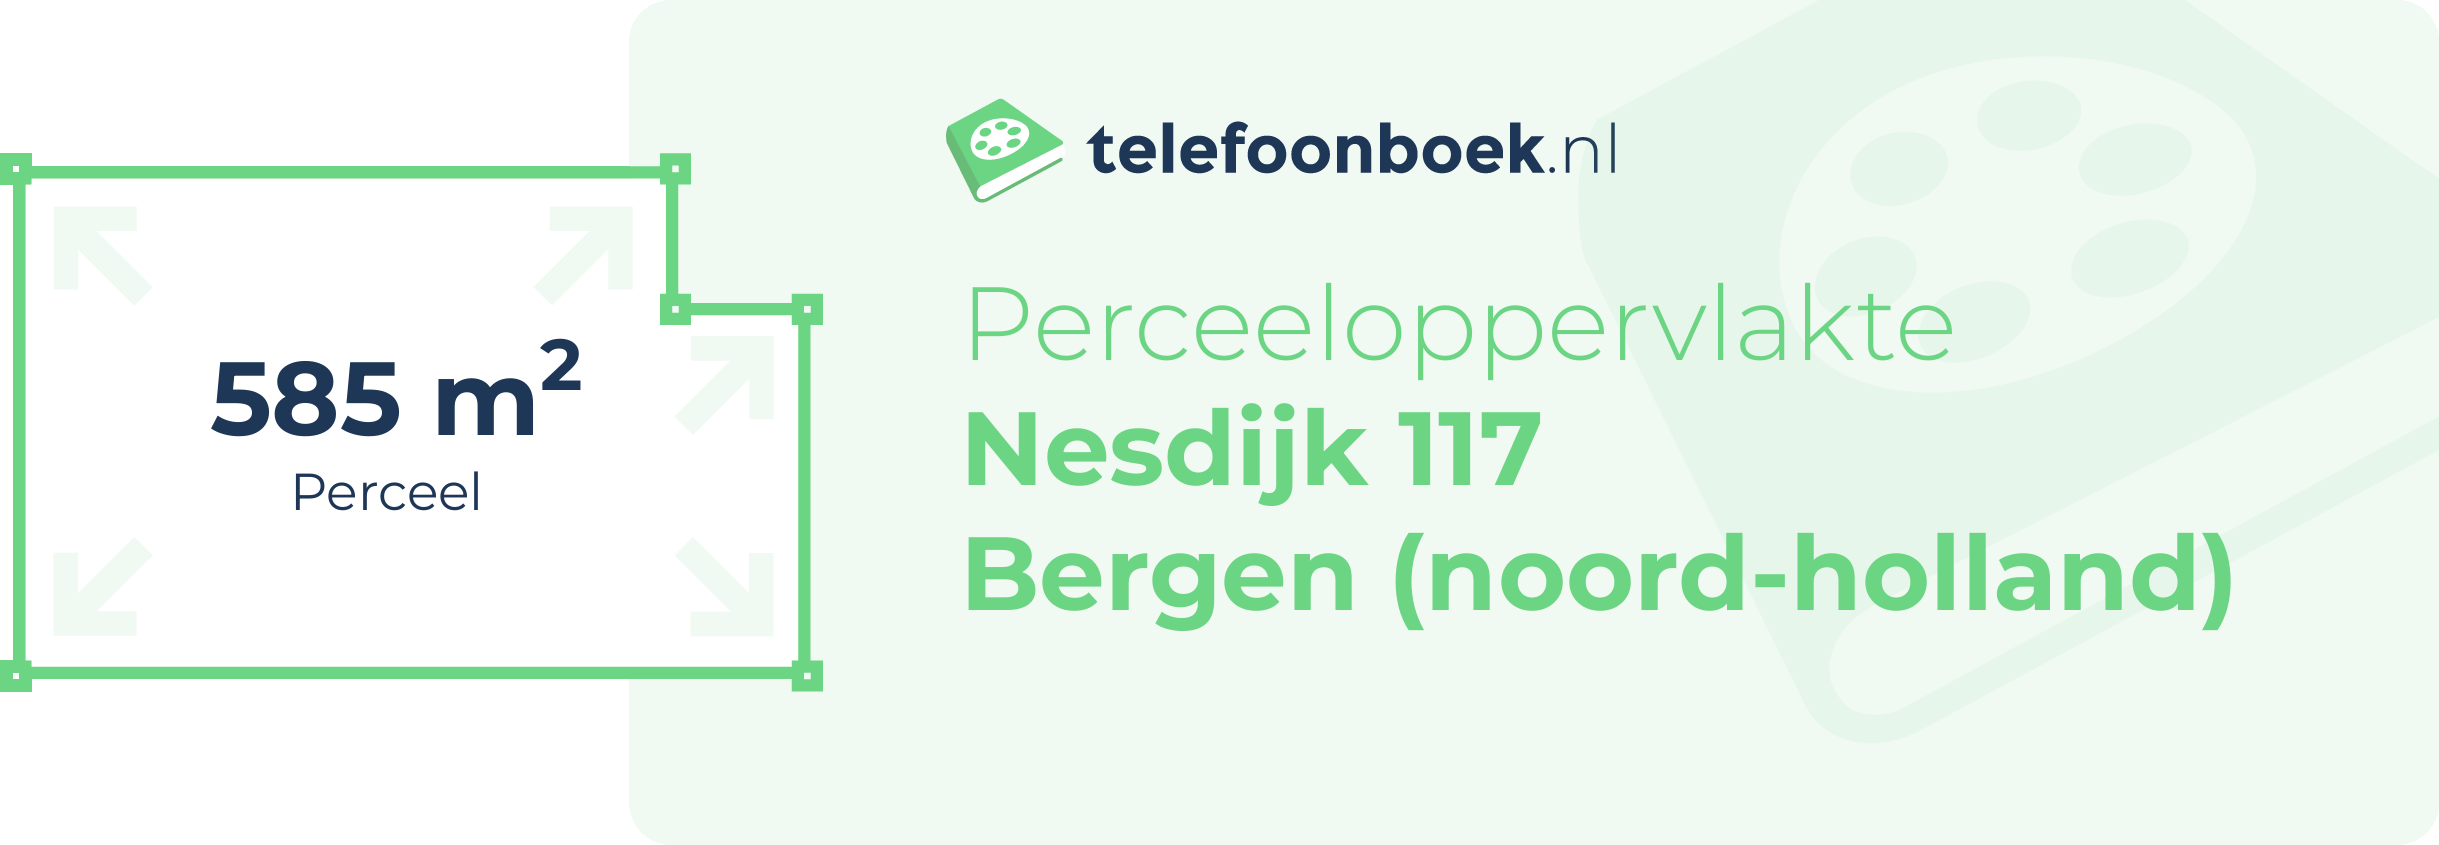 Perceeloppervlakte Nesdijk 117 Bergen (Noord-Holland)